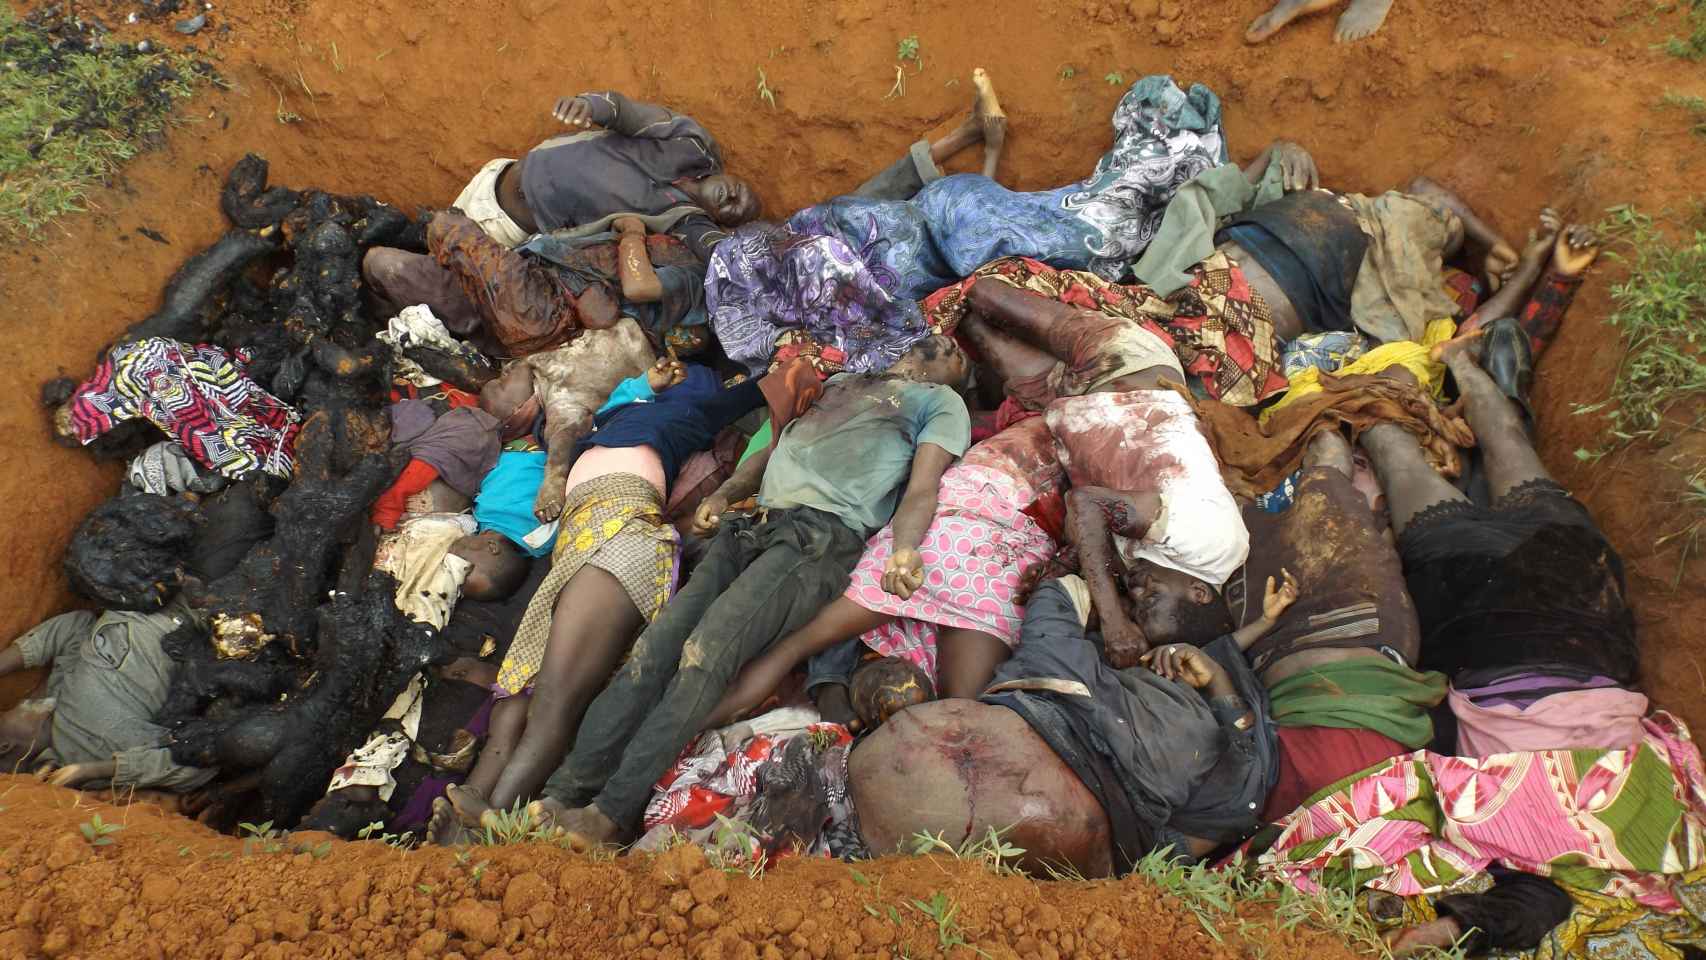 En sólo un mes más de 200 cristianos han sido asesinados en Nigeria por musulmanes - Página 5 Nigeria-Terrorismo-Genocidio-Boko_Haram-Mundo_449467338_139648665_1706x960